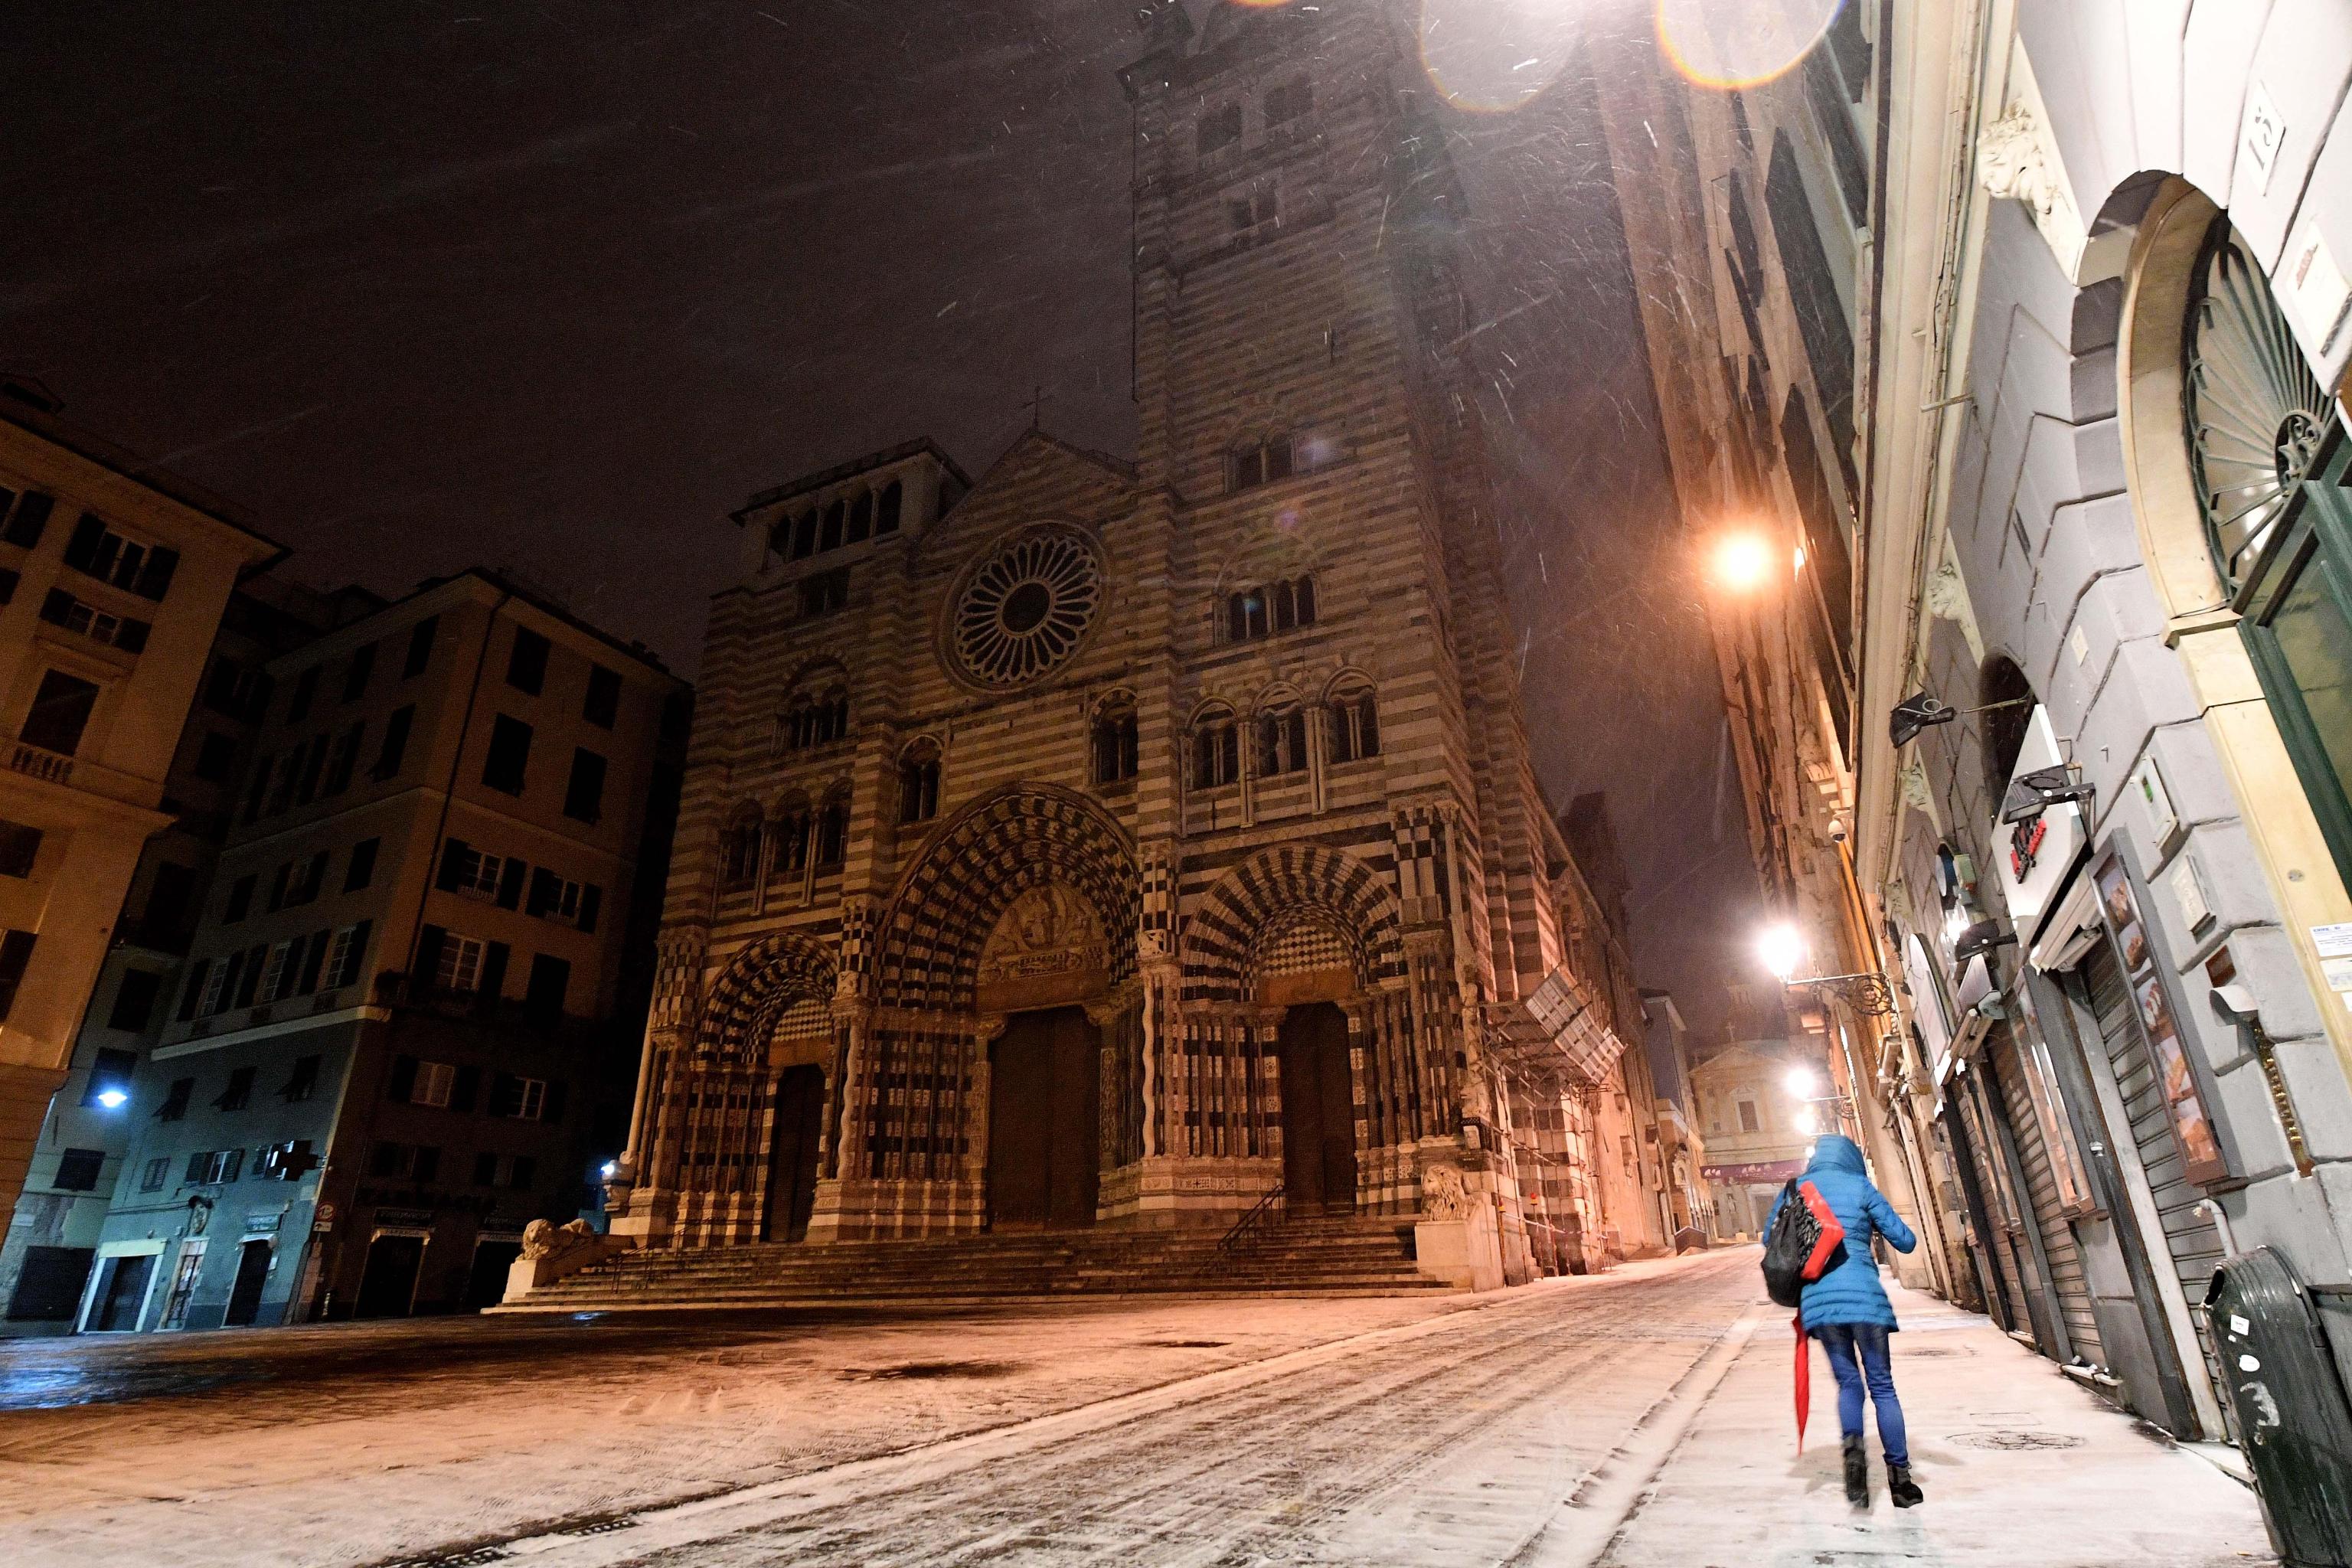 Una ragazza cammina sotto la neve in Piazza San Lorenzo a Genova, sullo sfondo si può ammirare la splendida cattedrale gotica di San Lorenzo